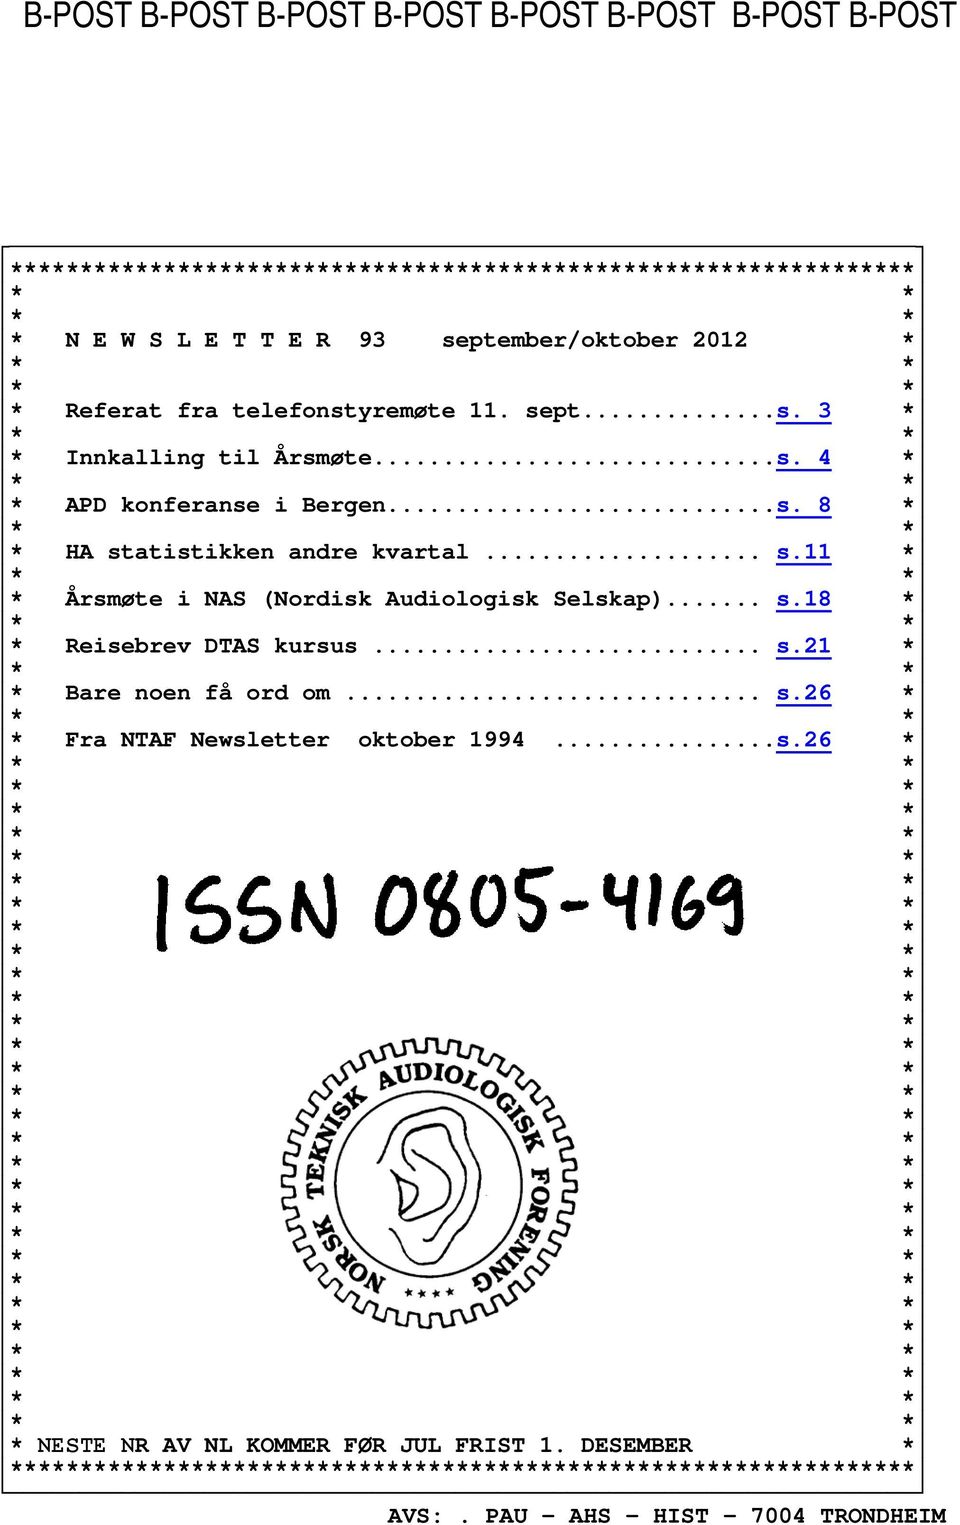 .. s.11 * * Årsmøte i NAS (Nordisk Audiologisk Selskap)... s.18 * * Reisebrev DTAS kursus... s.21 * * Bare noen få ord om... s.26 * * Fra NTAF Newsletter oktober 1994.